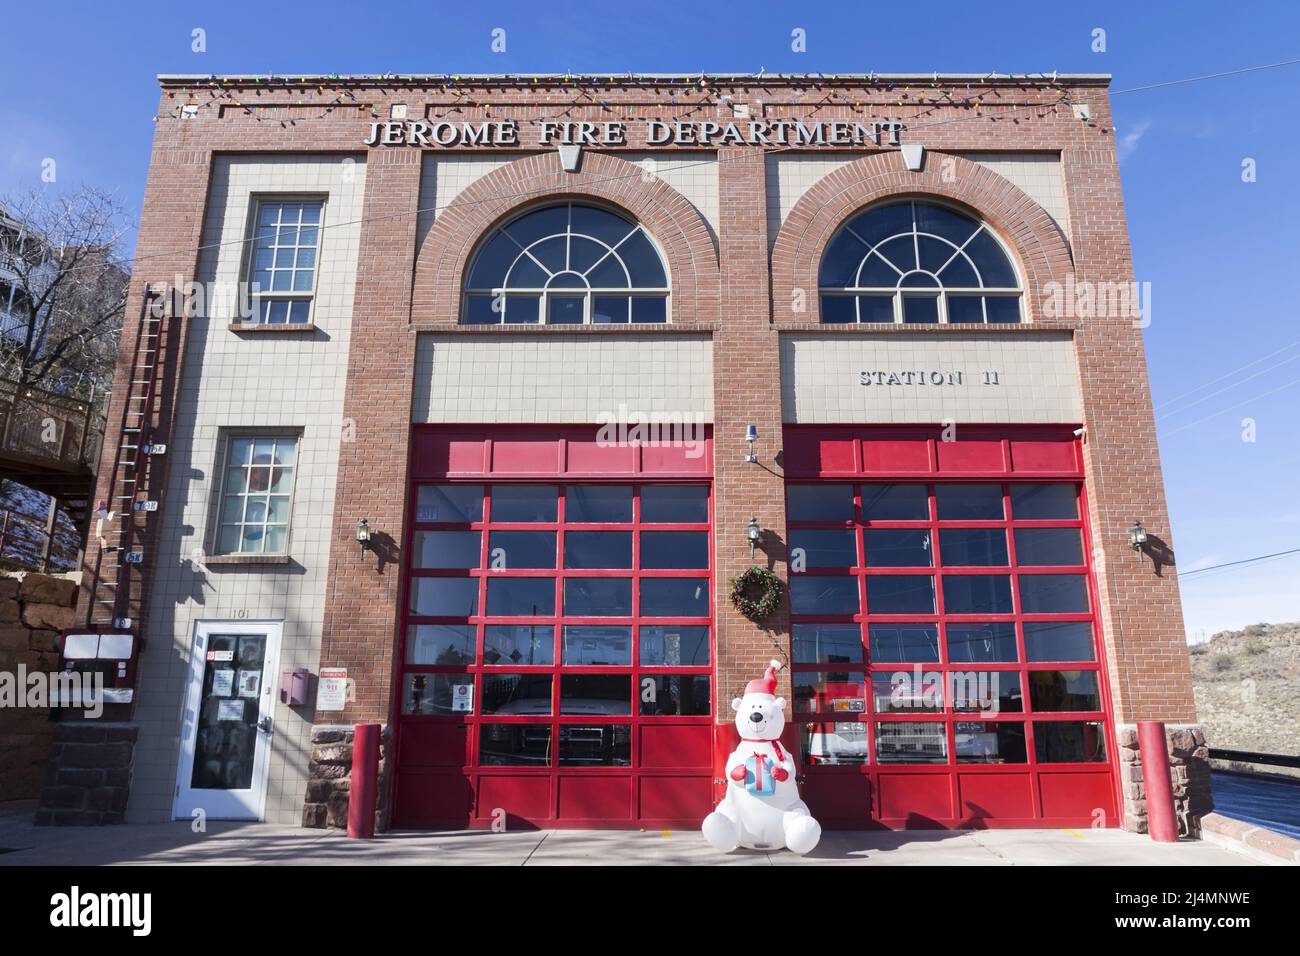 Vista frontal del edificio de la estación de bomberos en Jerome, Arizona Main Street con figura de Santa Claus en frente de las puertas del garaje Foto de stock